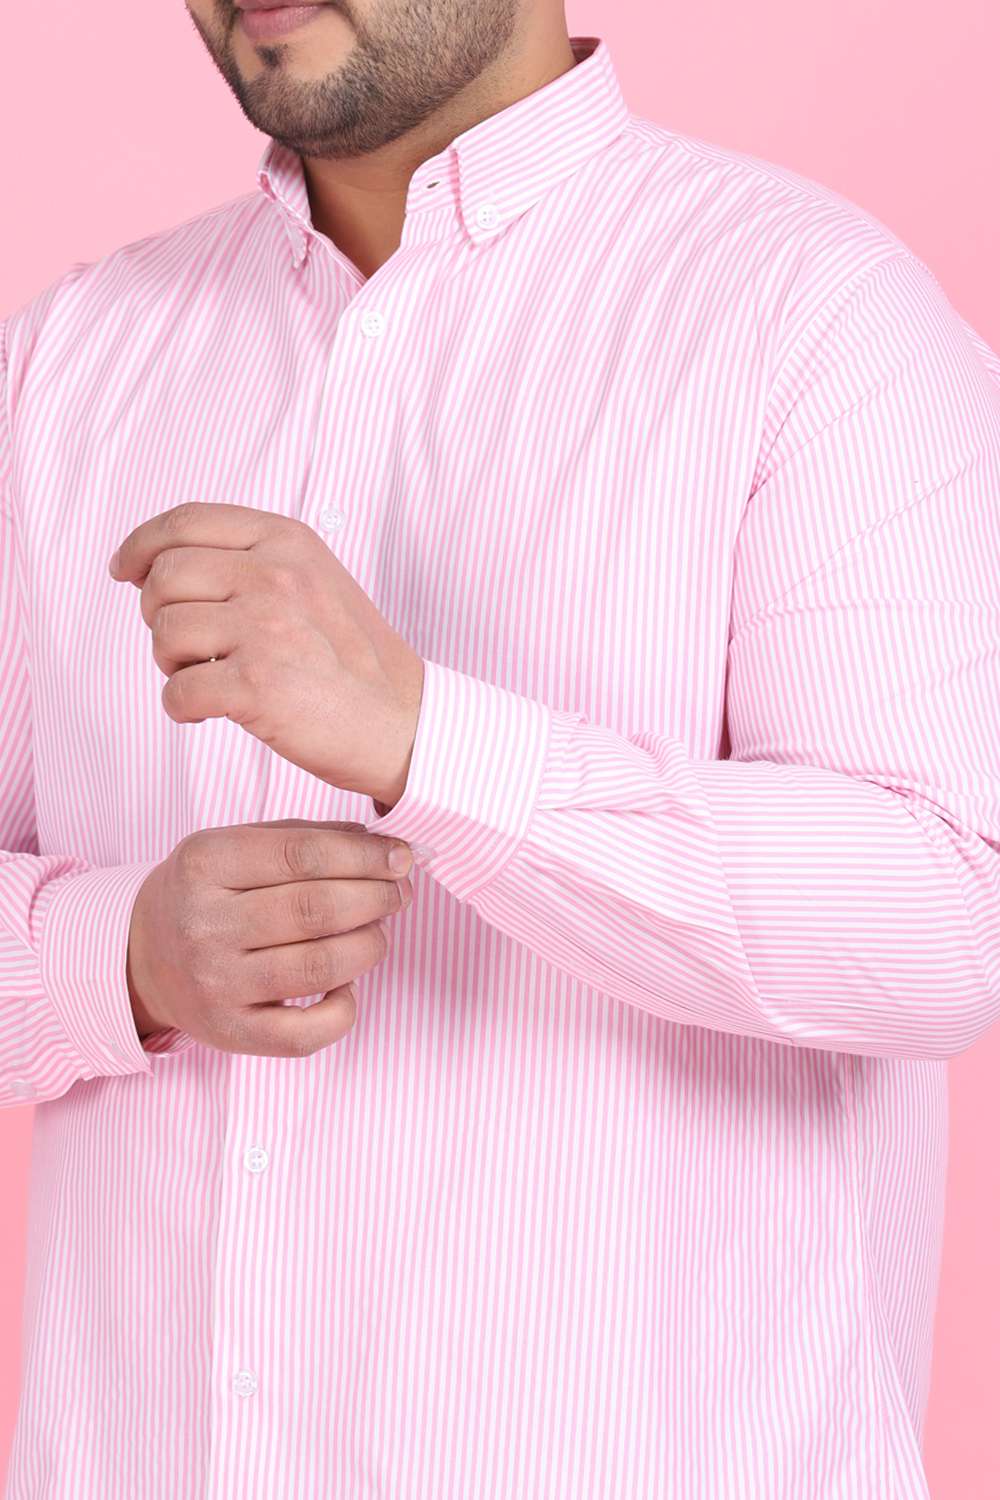 Lastinch Men Plus Size Pink Stripes Cotton Shirt (36) : : Clothing  & Accessories